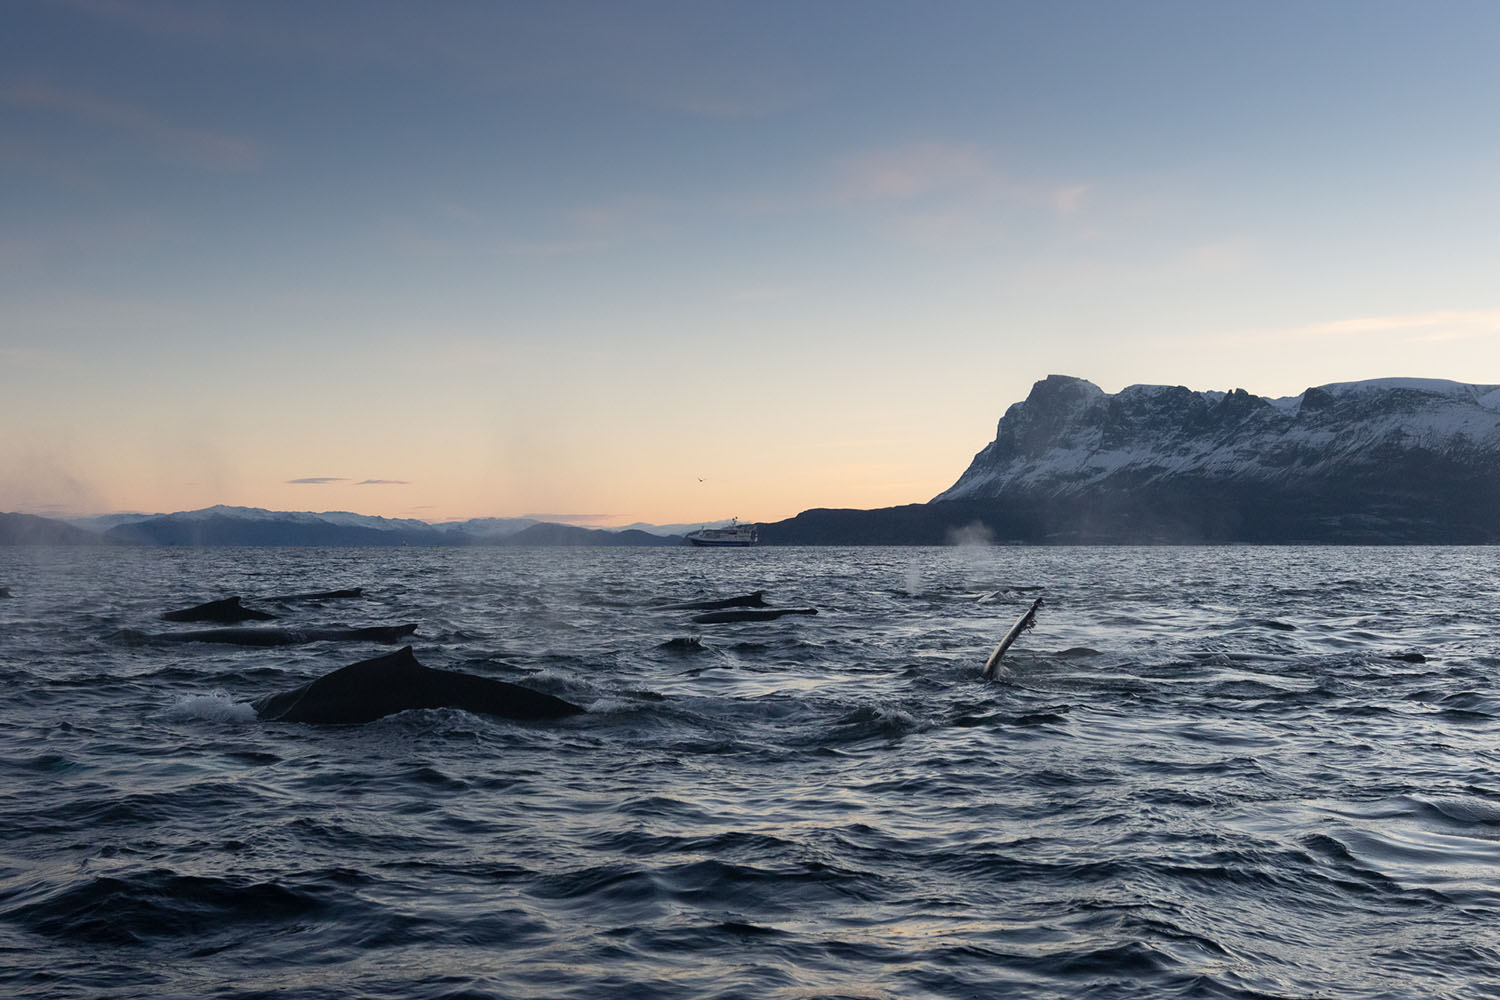 voyage scientifique - orques et baleines a bosse de norvege 14